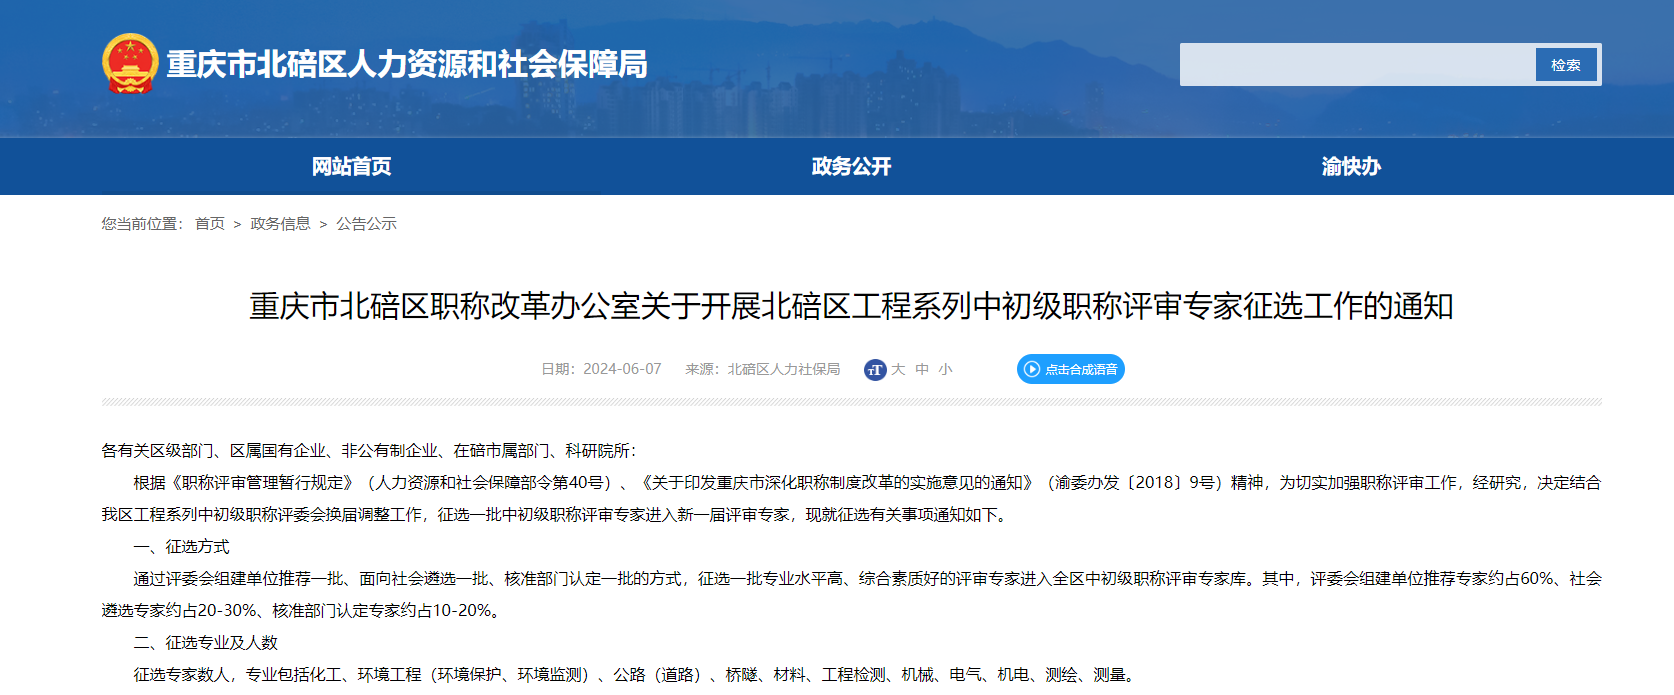 转发《重庆市北碚区职称改革办公室关于开展北碚区工程系列中初级职称评审专家征选工作的通知》